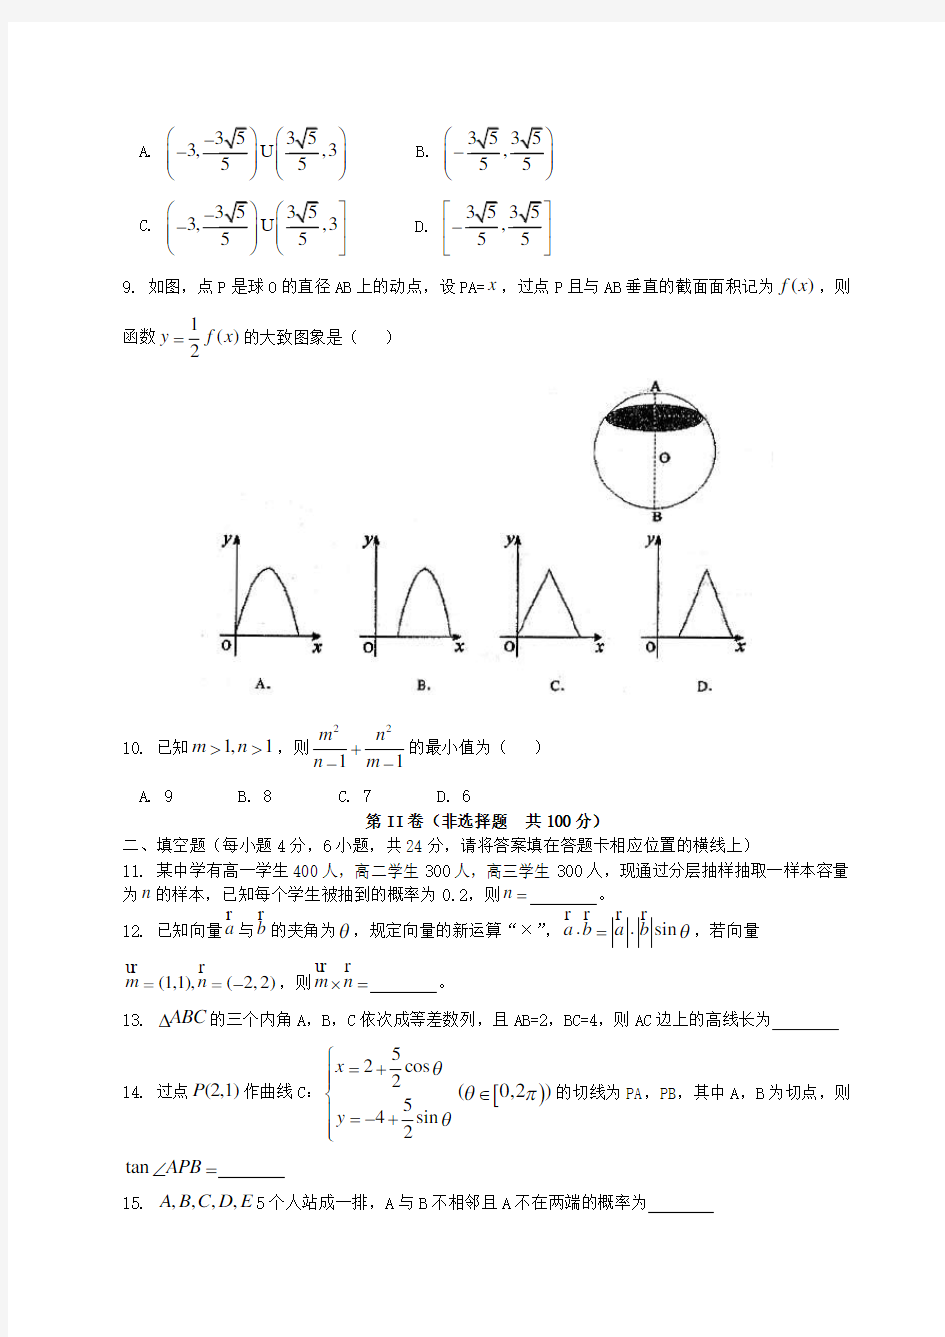 重庆南开中学2020学年度高2020级数学理科6月考前猜题卷